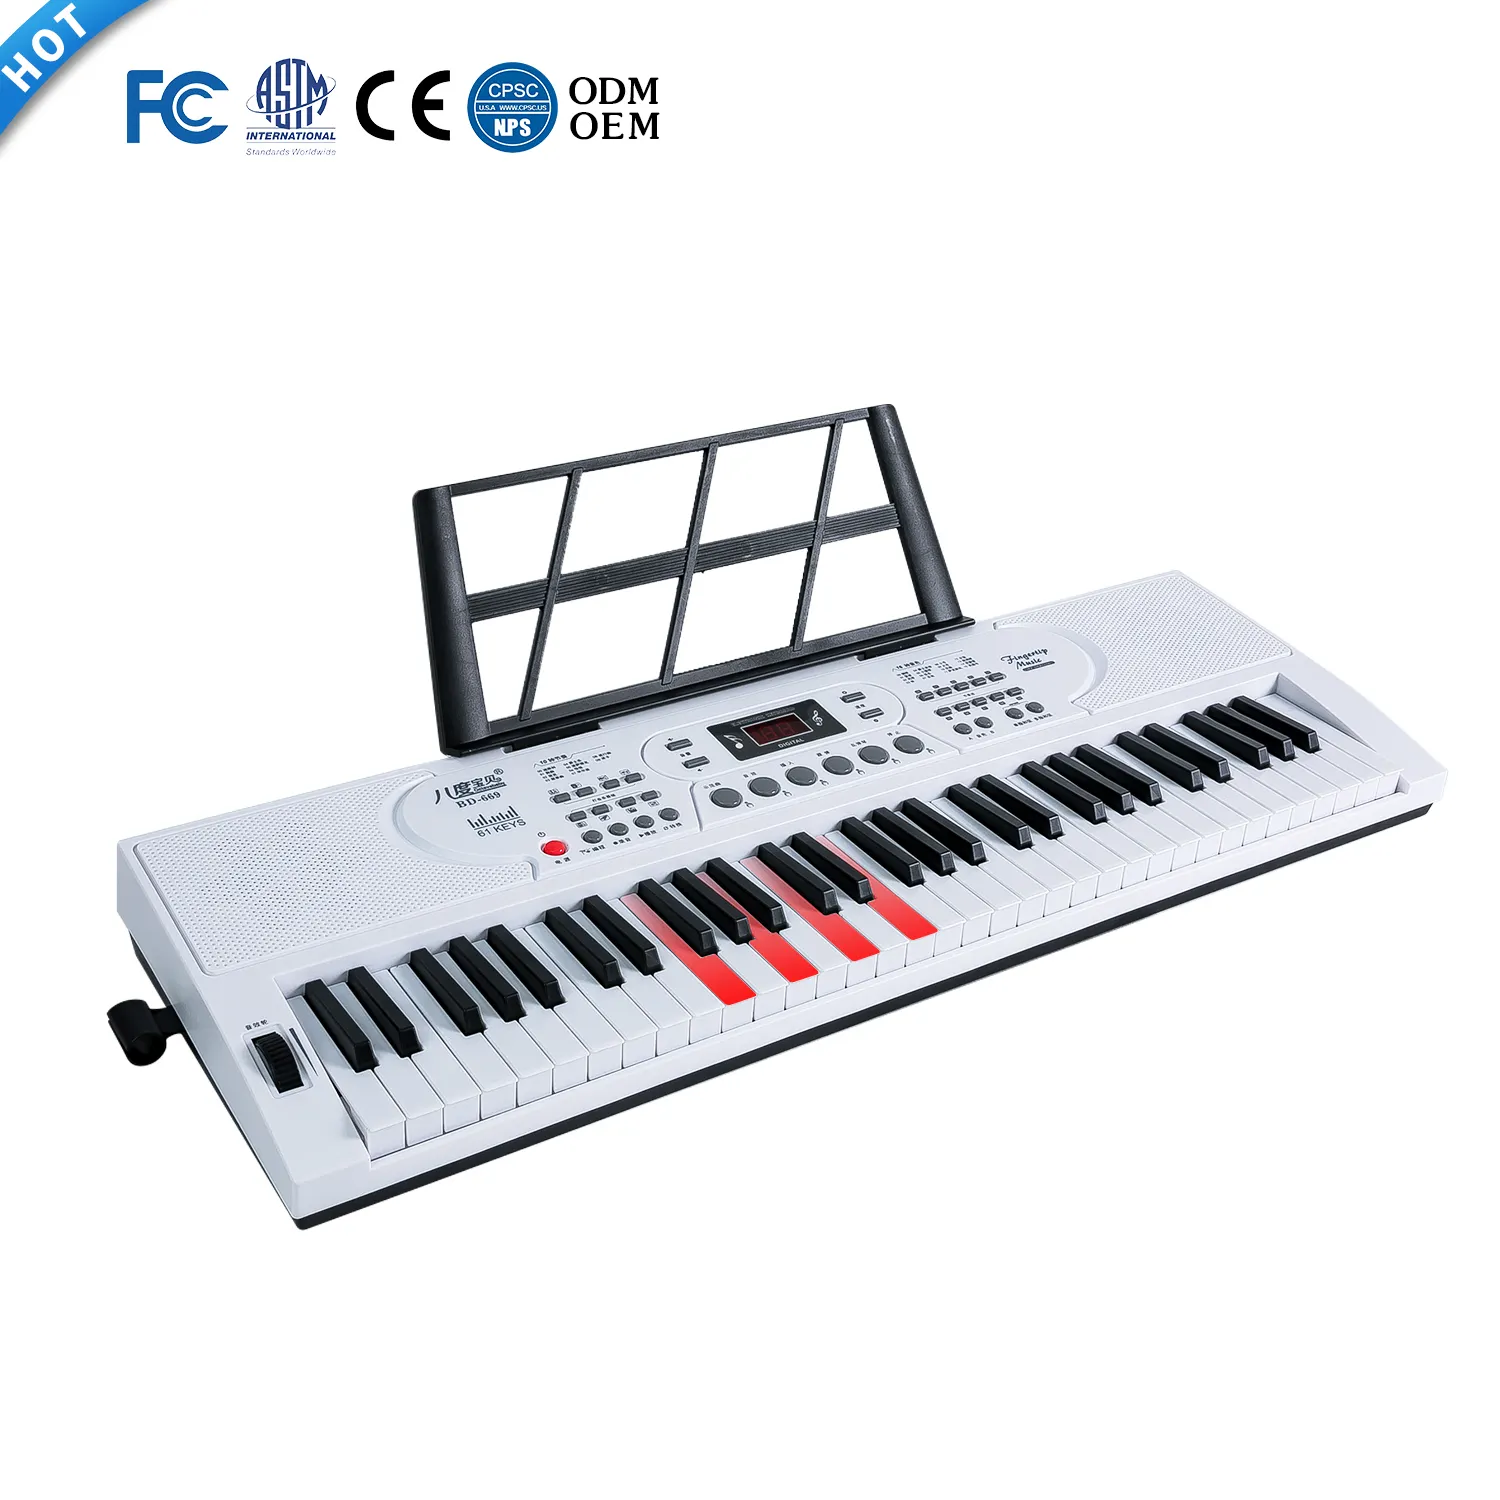 Instrumento de Piano para principiantes, función de acorde de un solo dedo, teclado de órgano electrónico, función de mantenimiento, función de aprendizaje ligero